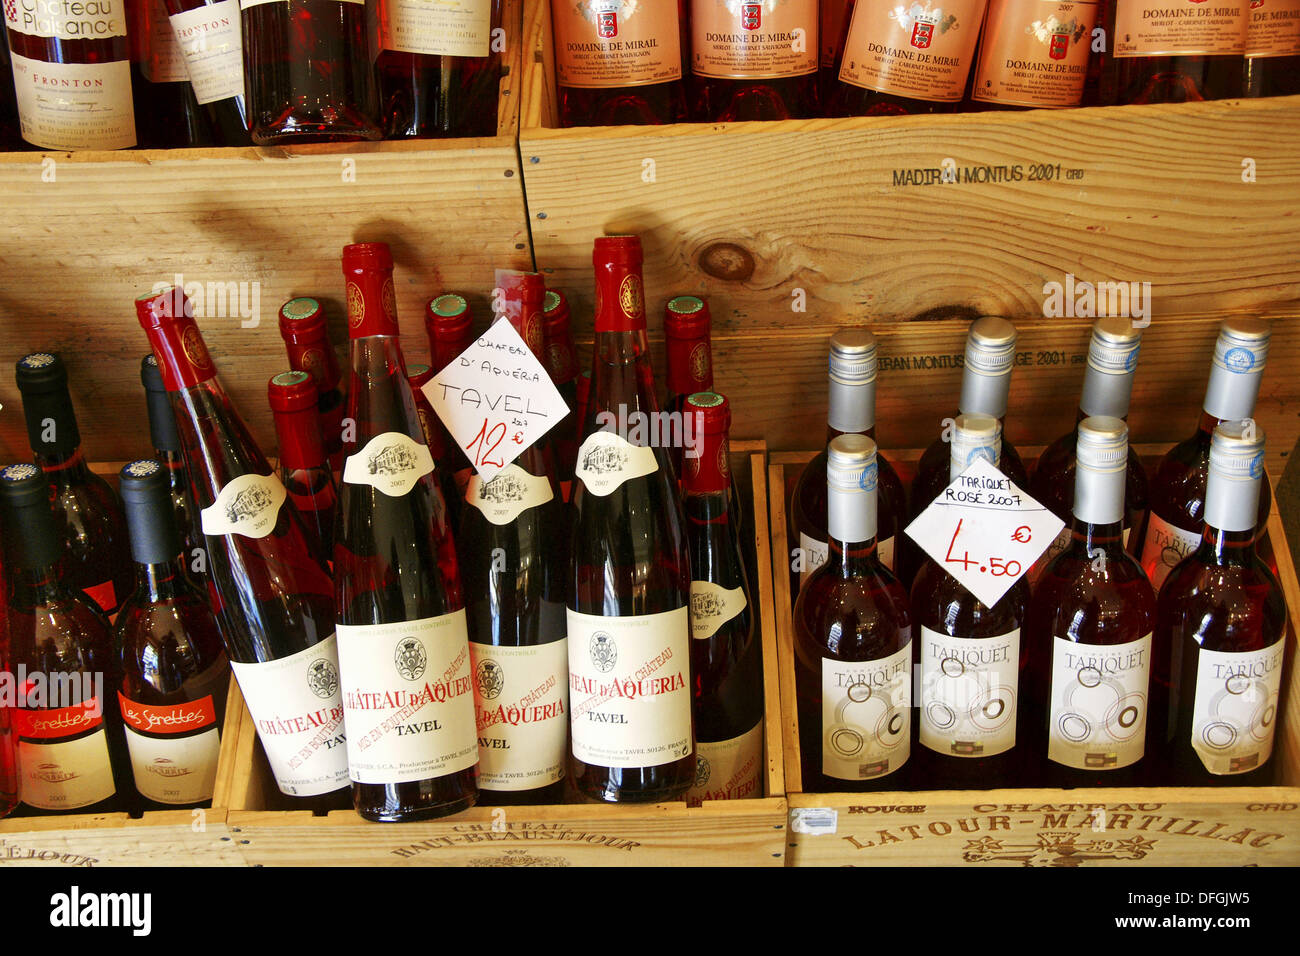 Verschiedene französische Weine (Tavel, Tariquet, etc.), Frankreich Stockfoto